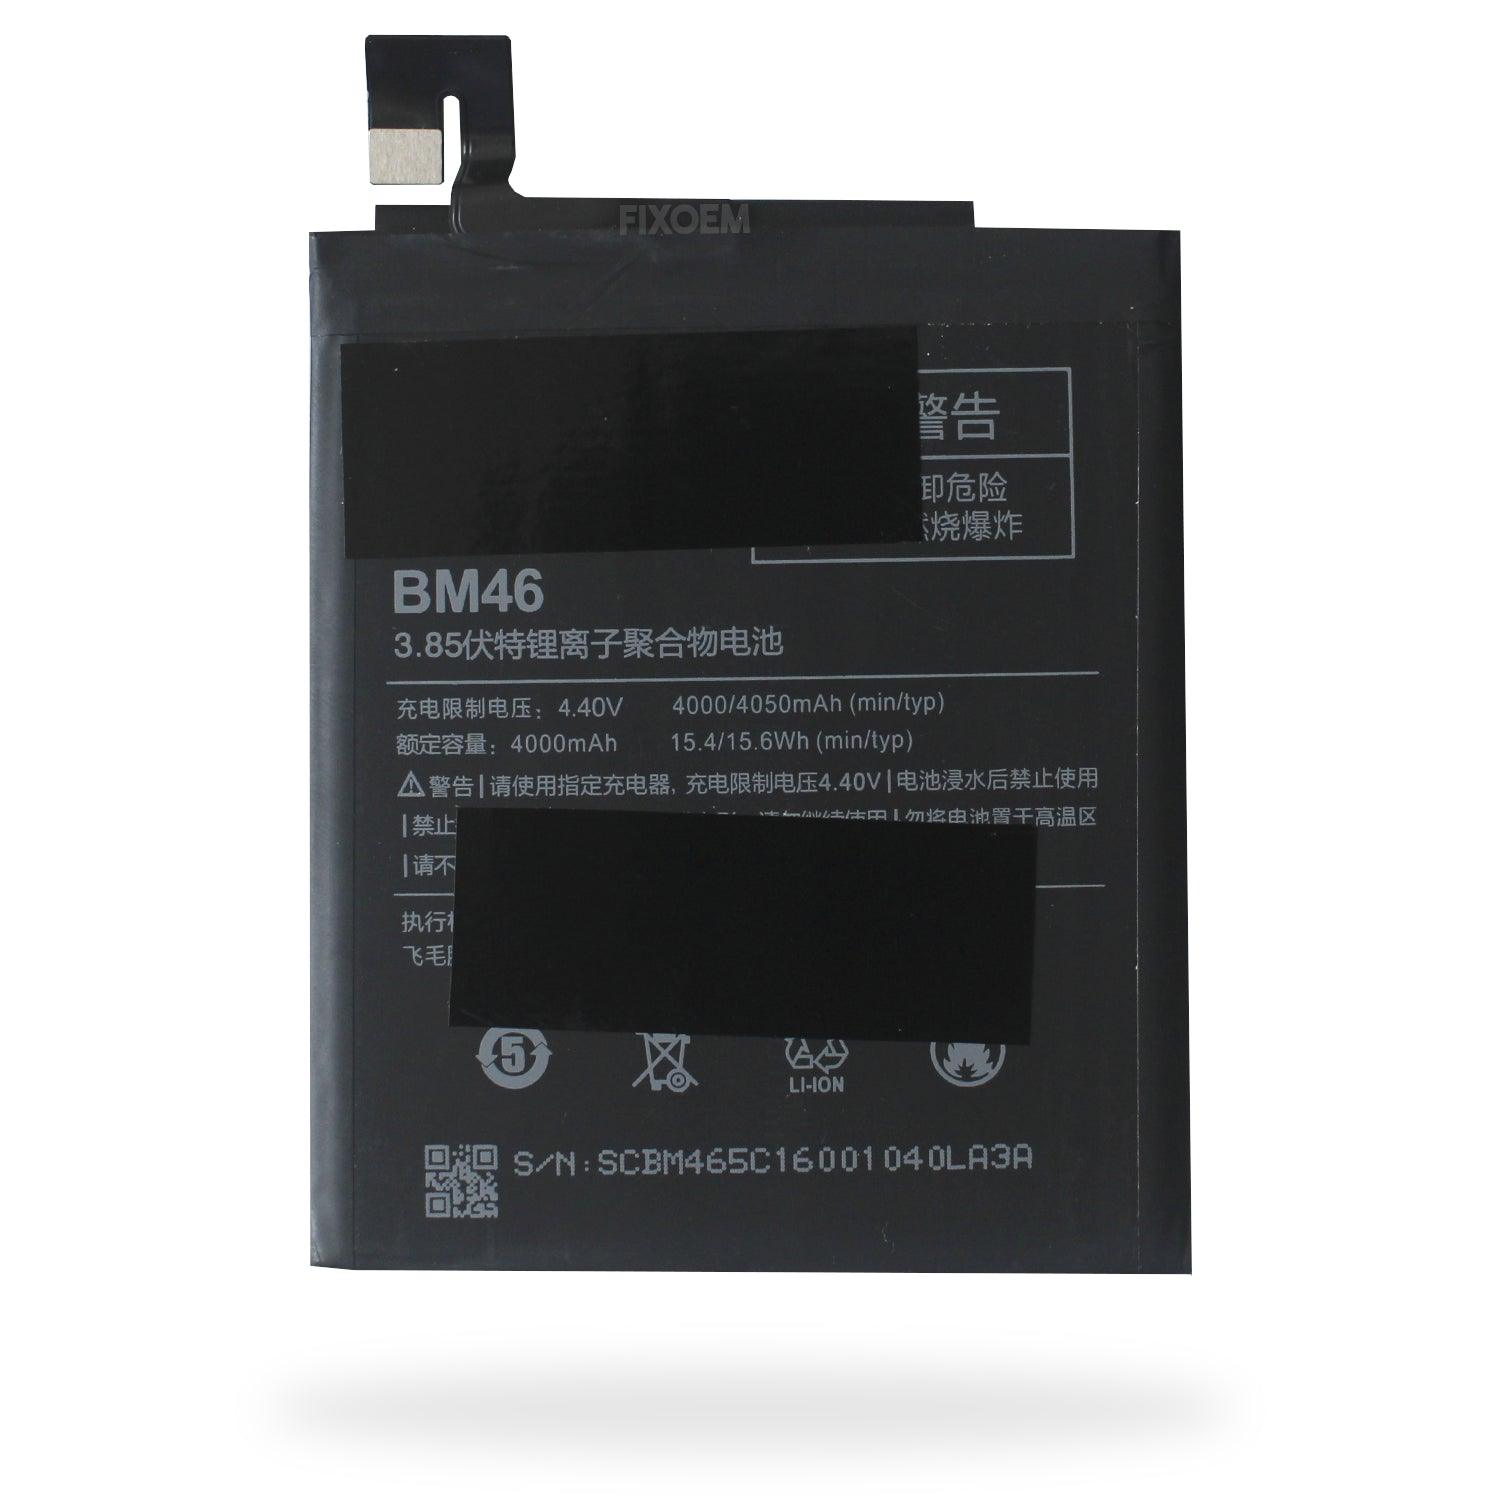 Bateria Xiaomi Note 3 MCE8 Bm46 a solo $ 130.00 Refaccion y puestos celulares, refurbish y microelectronica.- FixOEM